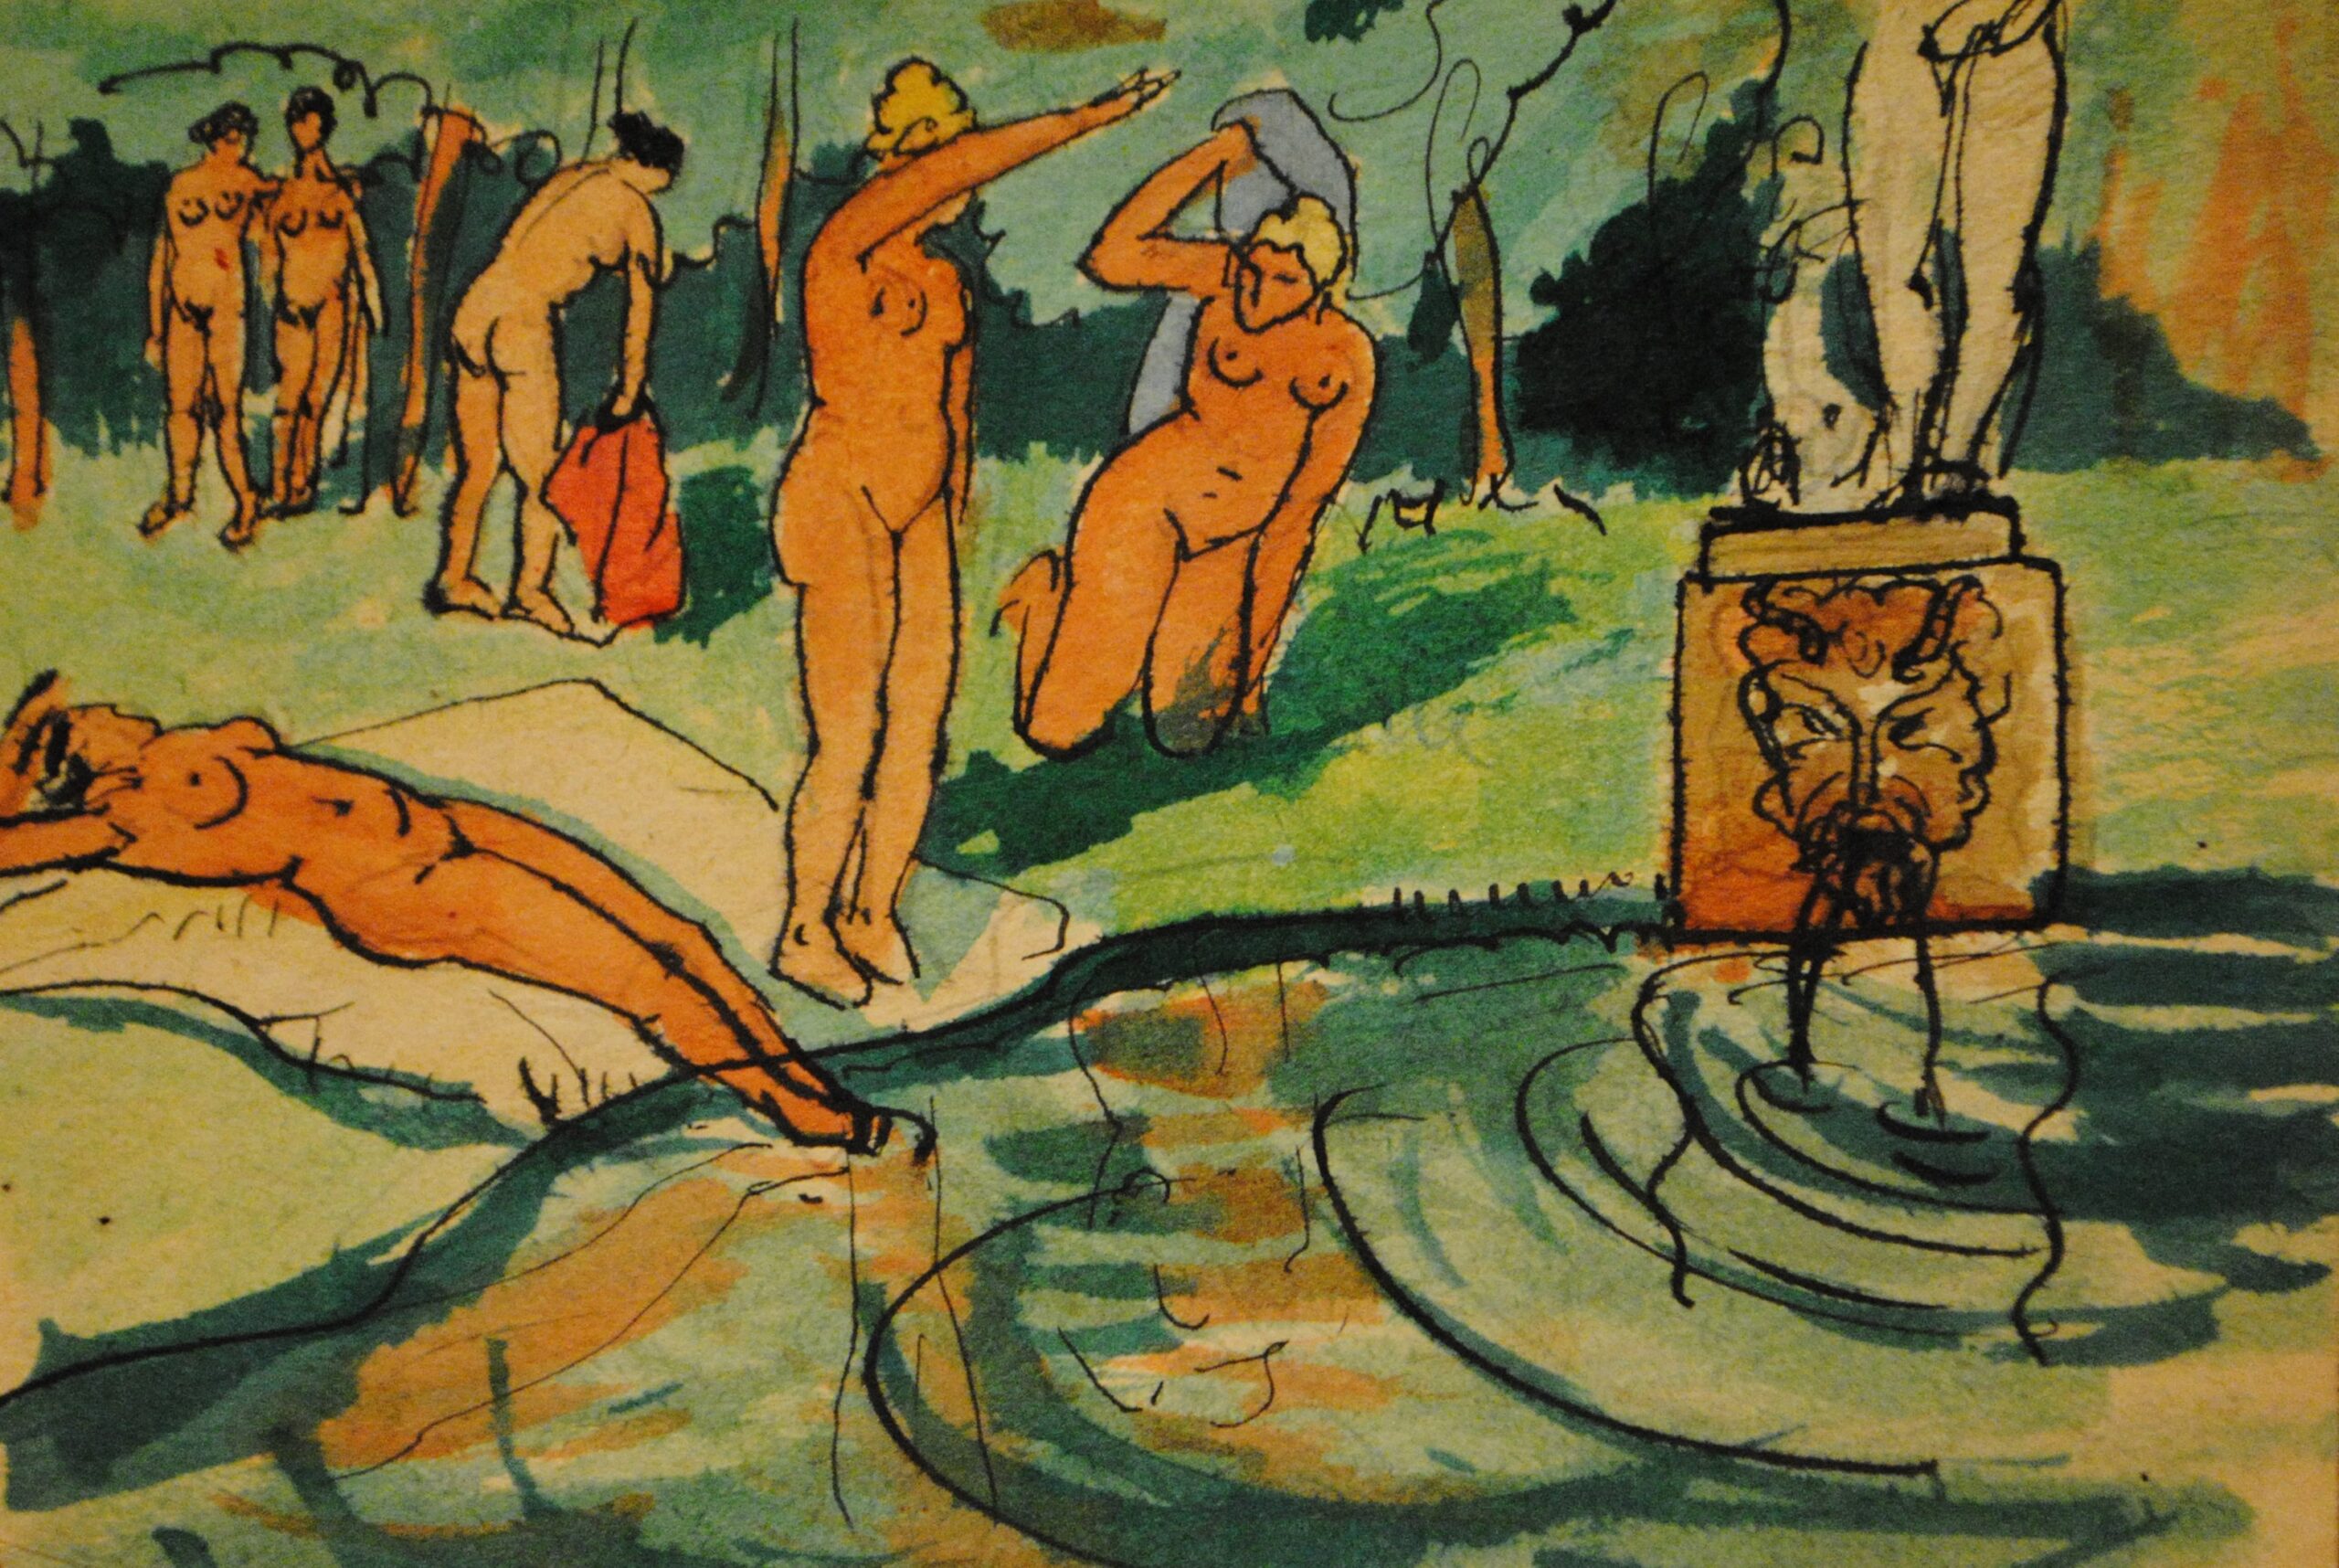 Dibujo de José Manaut. Mujeres desnudas junto a un lago o fuente con escultura clásica con fauno.